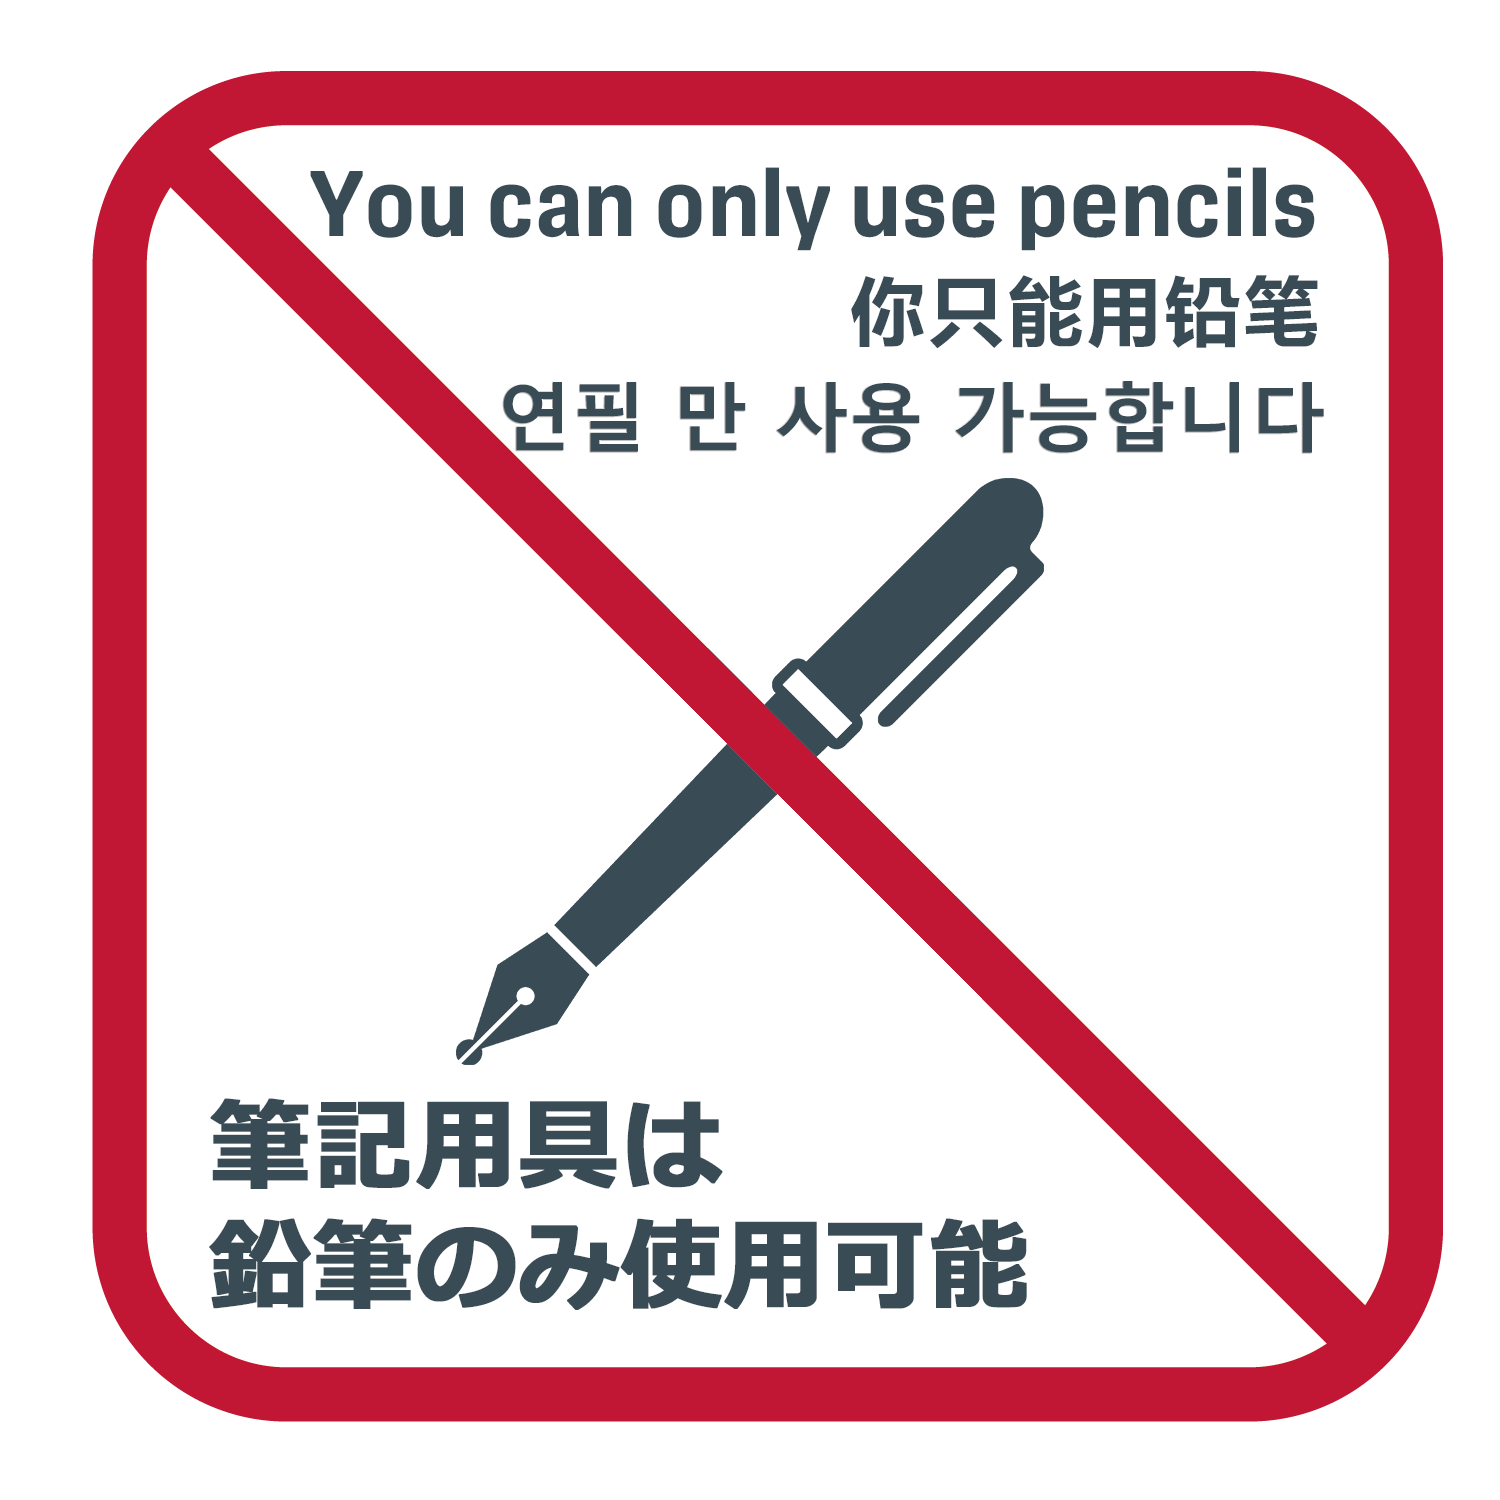 筆記用具は鉛筆のみ使用可能